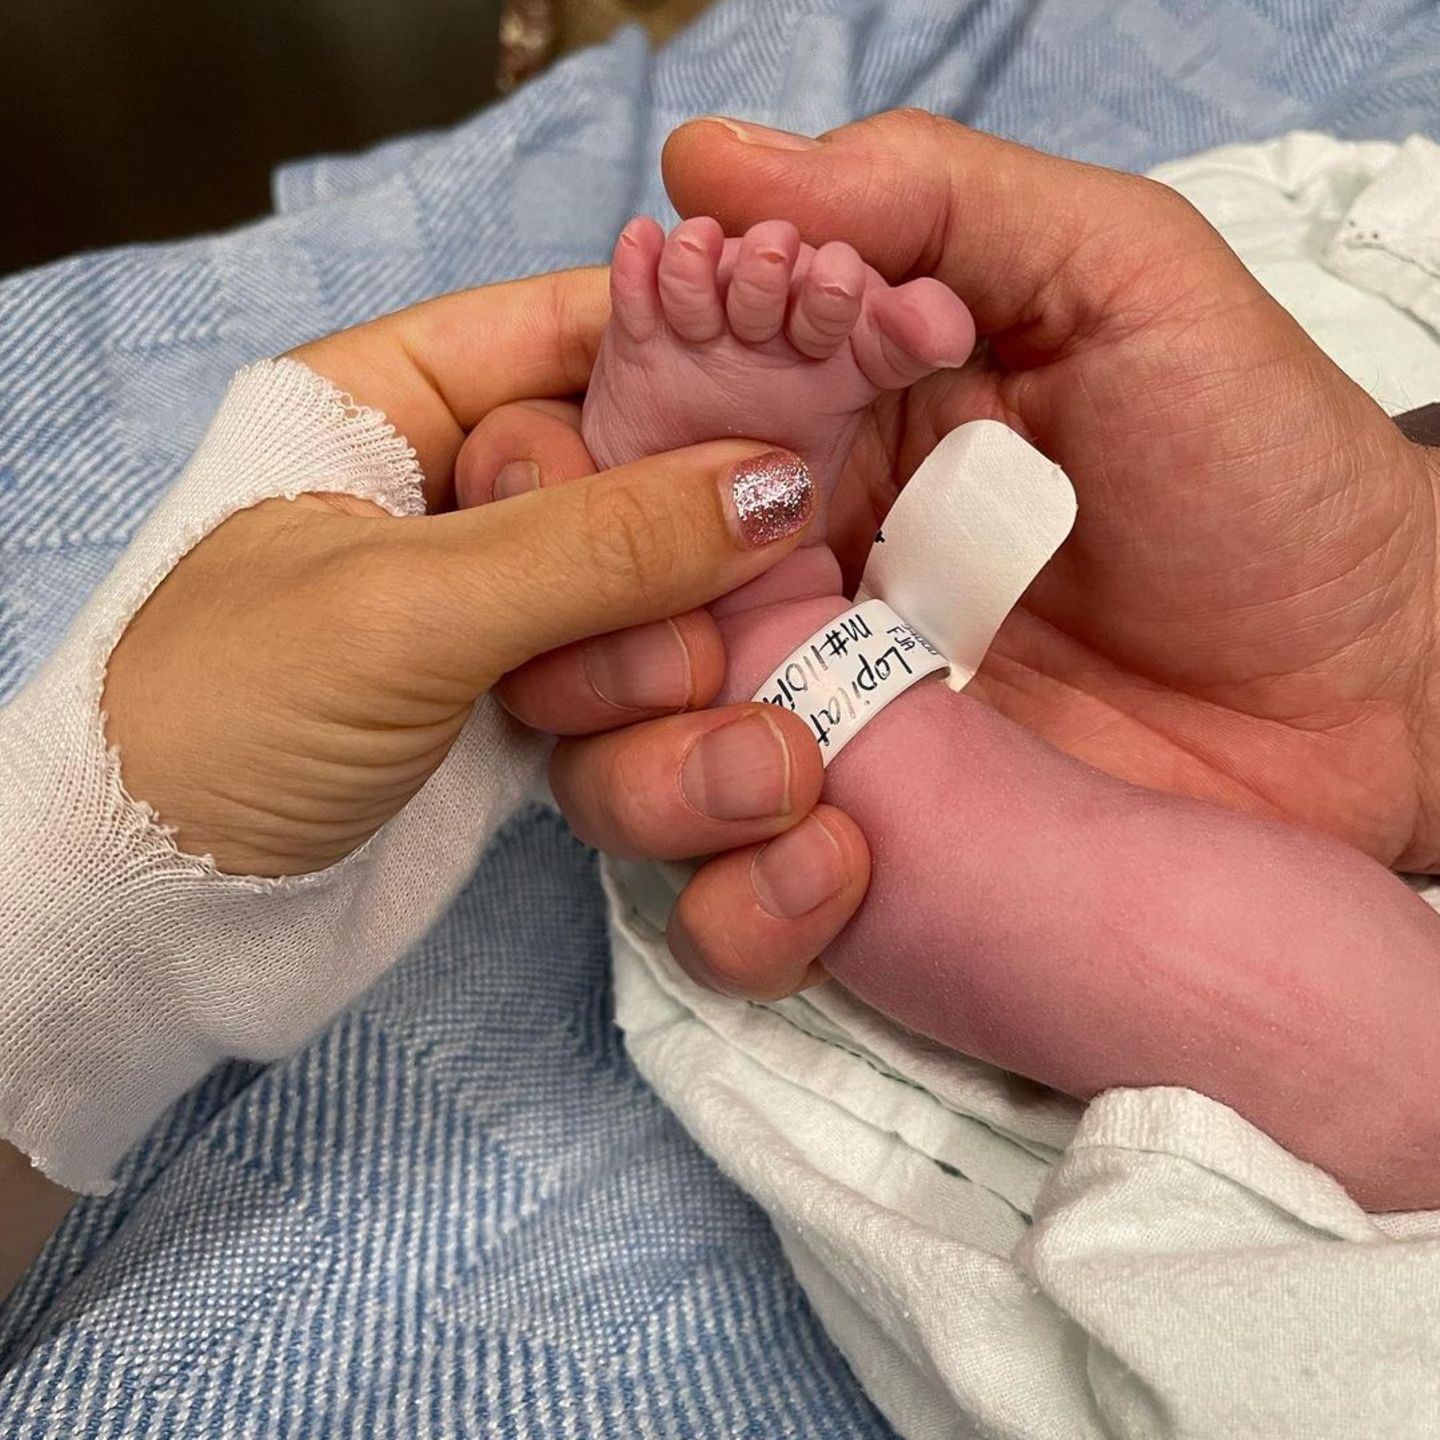 Star-Babys 2022: Michael Bublé und Luisana Lopilato halten Babyfuss